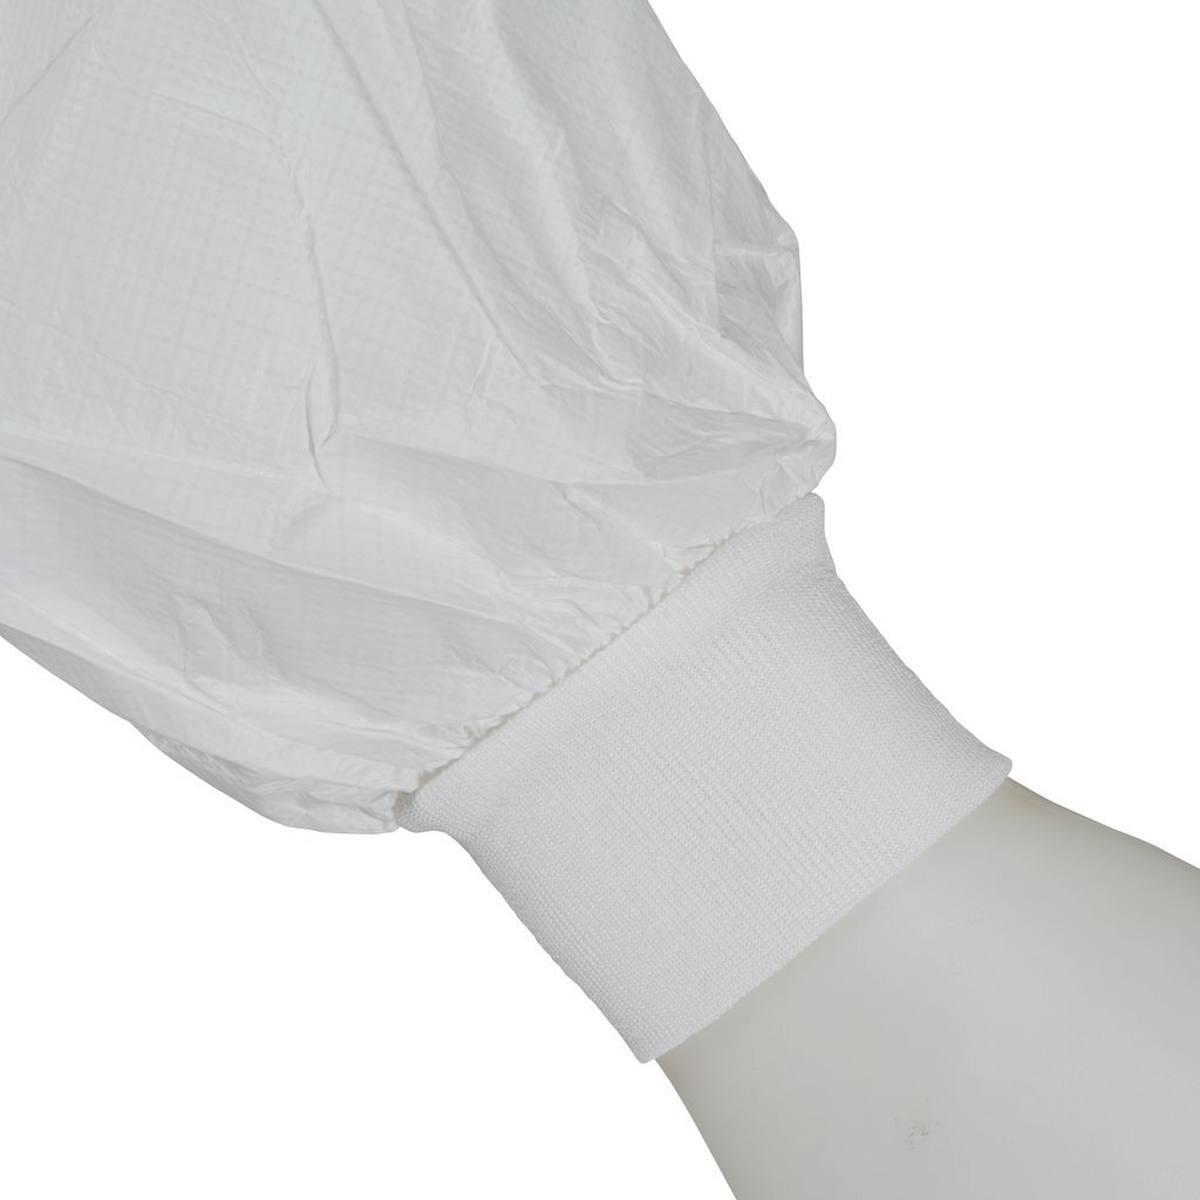 3M 4440 jas, wit, maat L, bijzonder ademend, zeer licht, met ritssluiting, gebreide manchetten